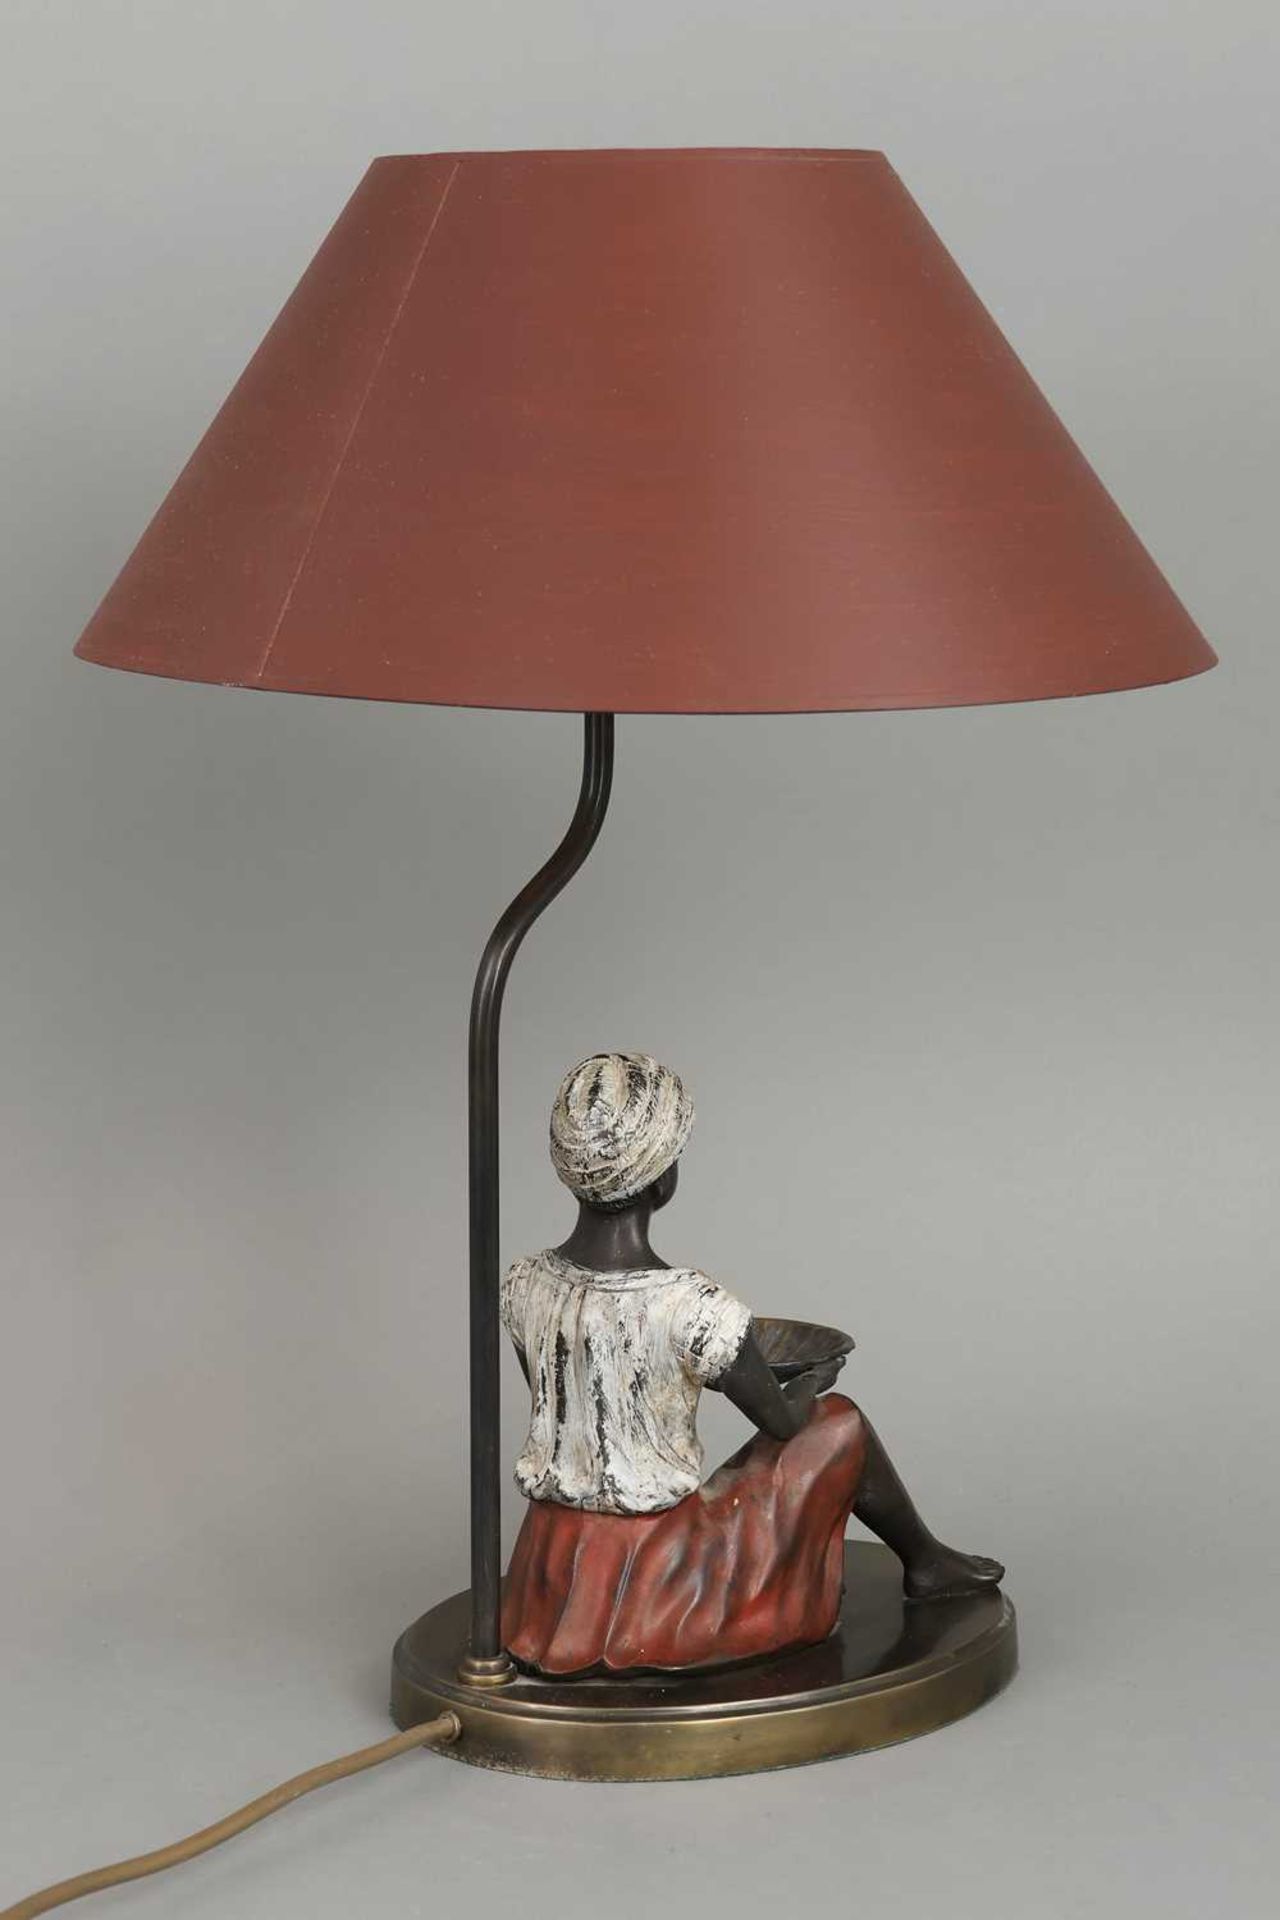 Tischlampe mit Figur eins afrikanischen Lakaien mit Muschelschale - Image 2 of 3